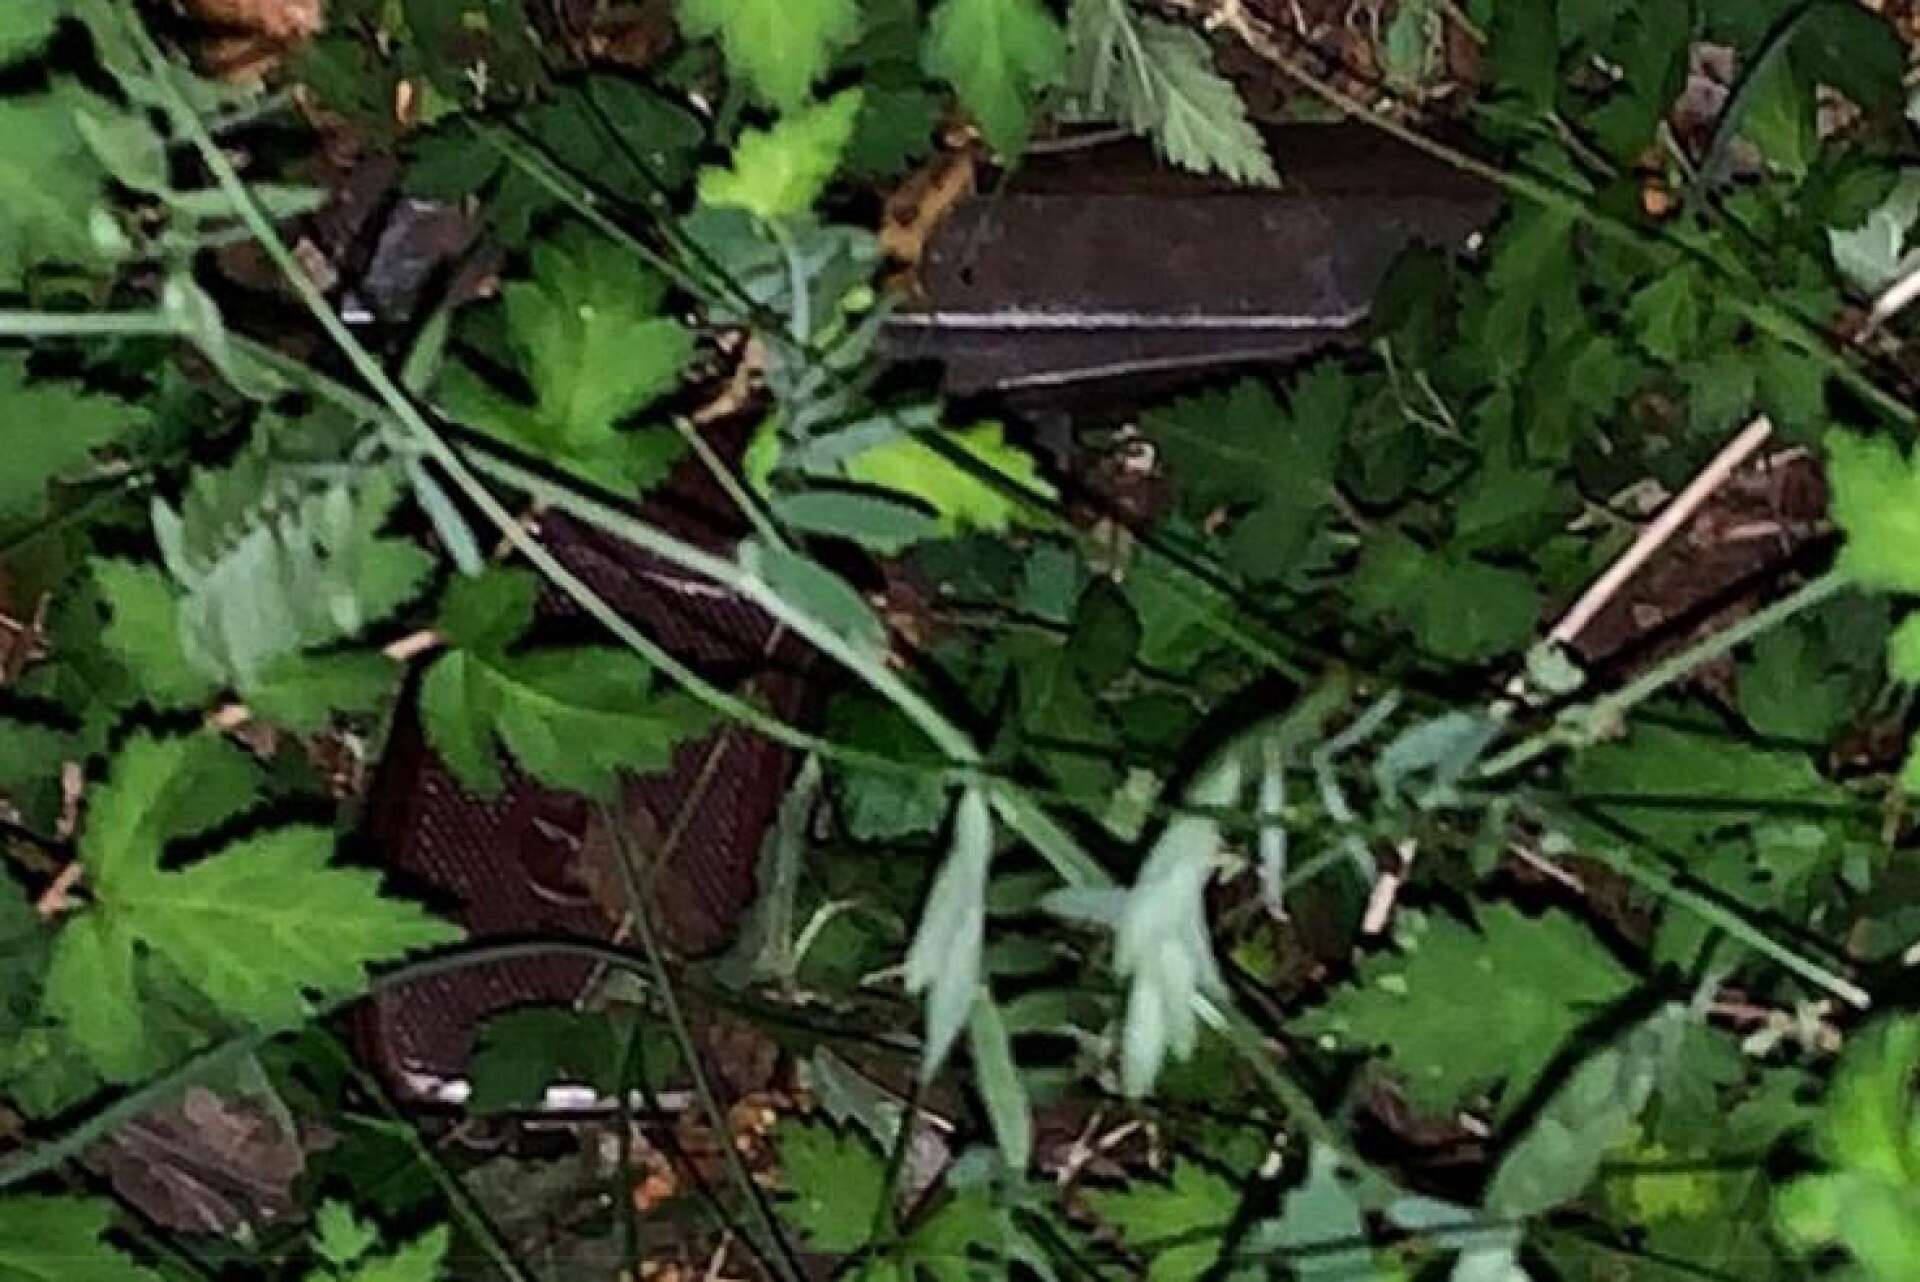 Vapnet hittades slängt i en buske på Rud - i närheten av platsen där 19-åringen greps.